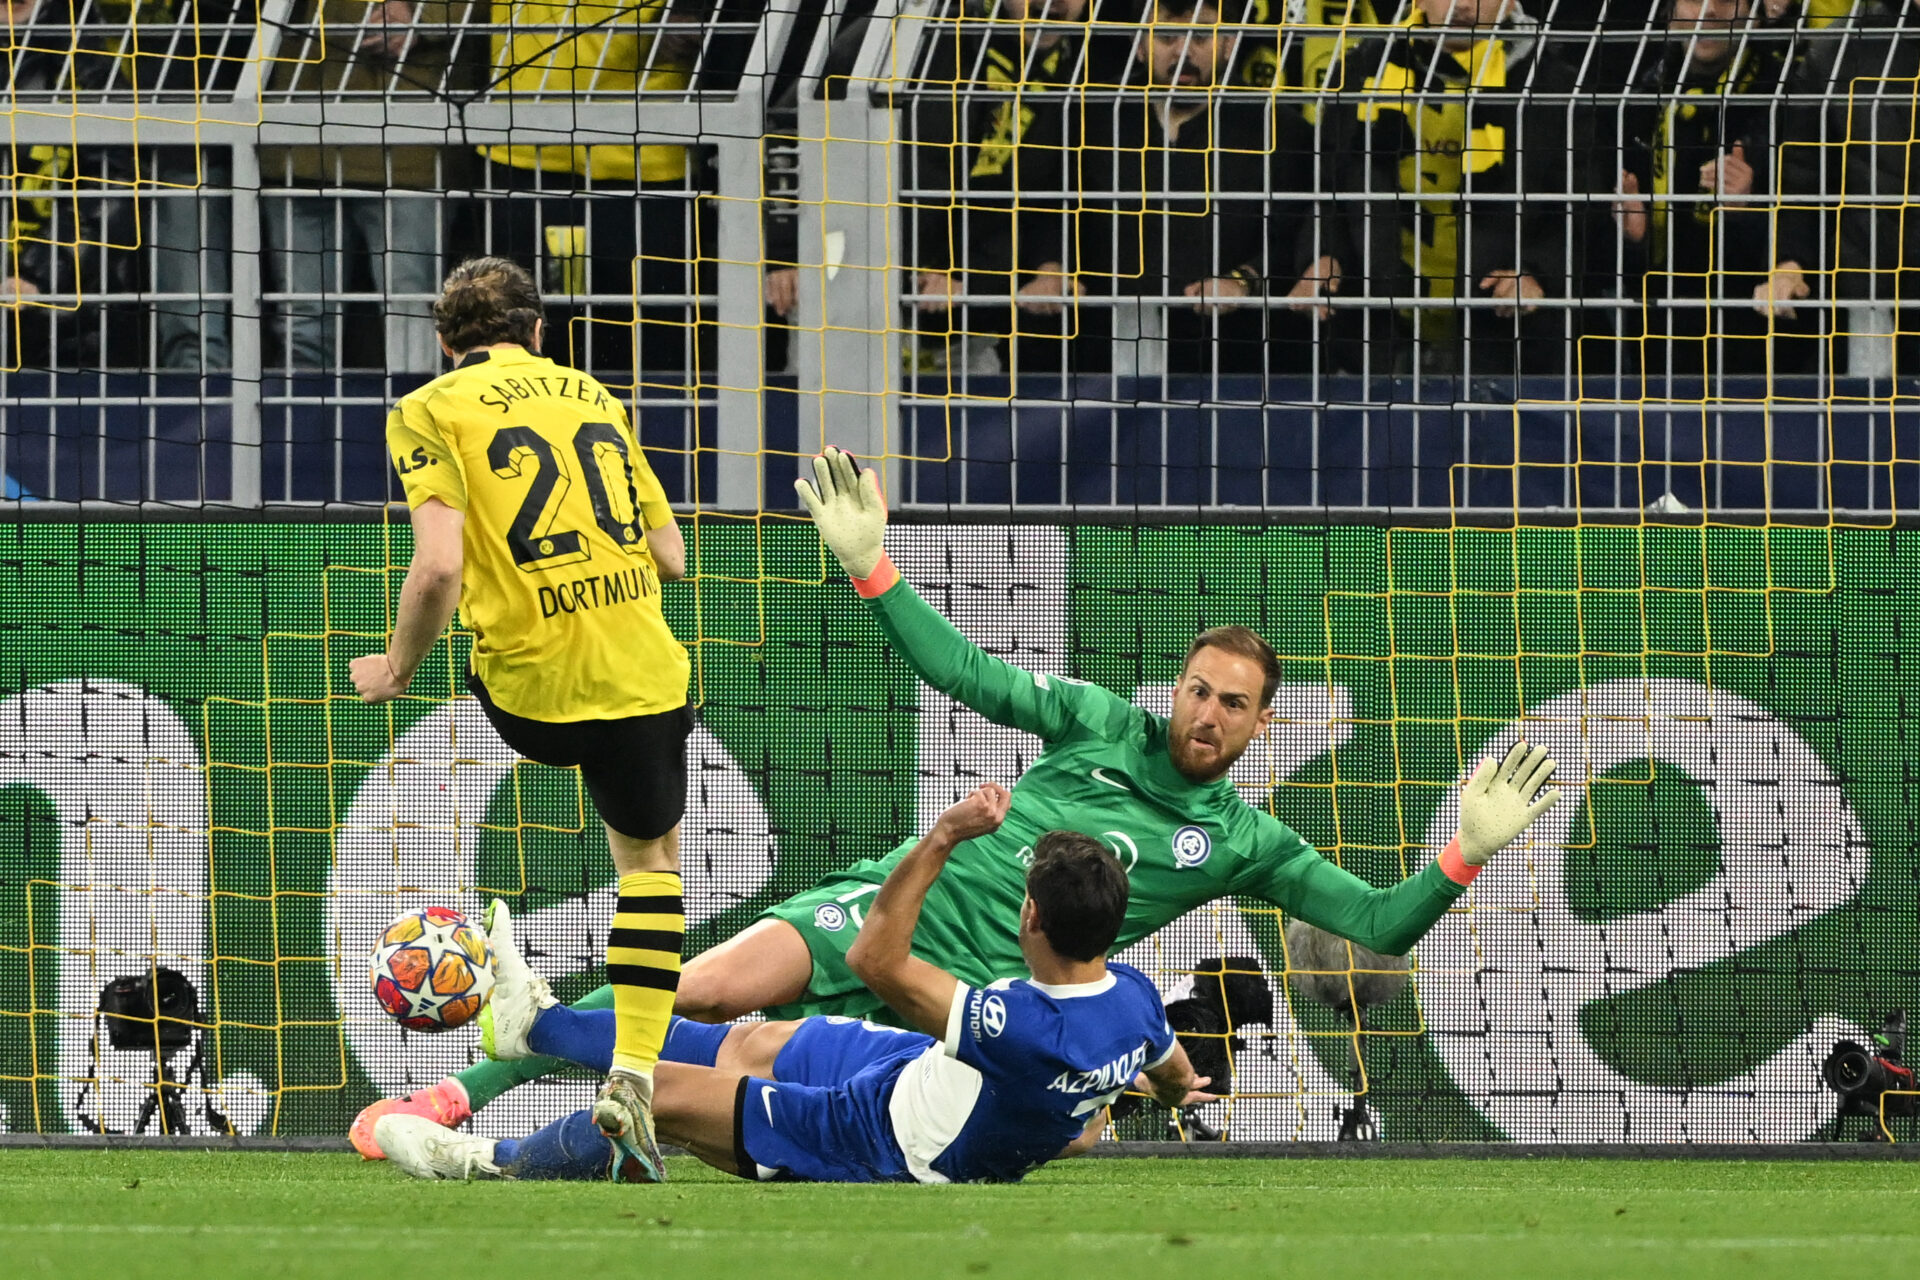 AO VIVO: Dortmund x Atlético de Madri pelas quartas da Champions